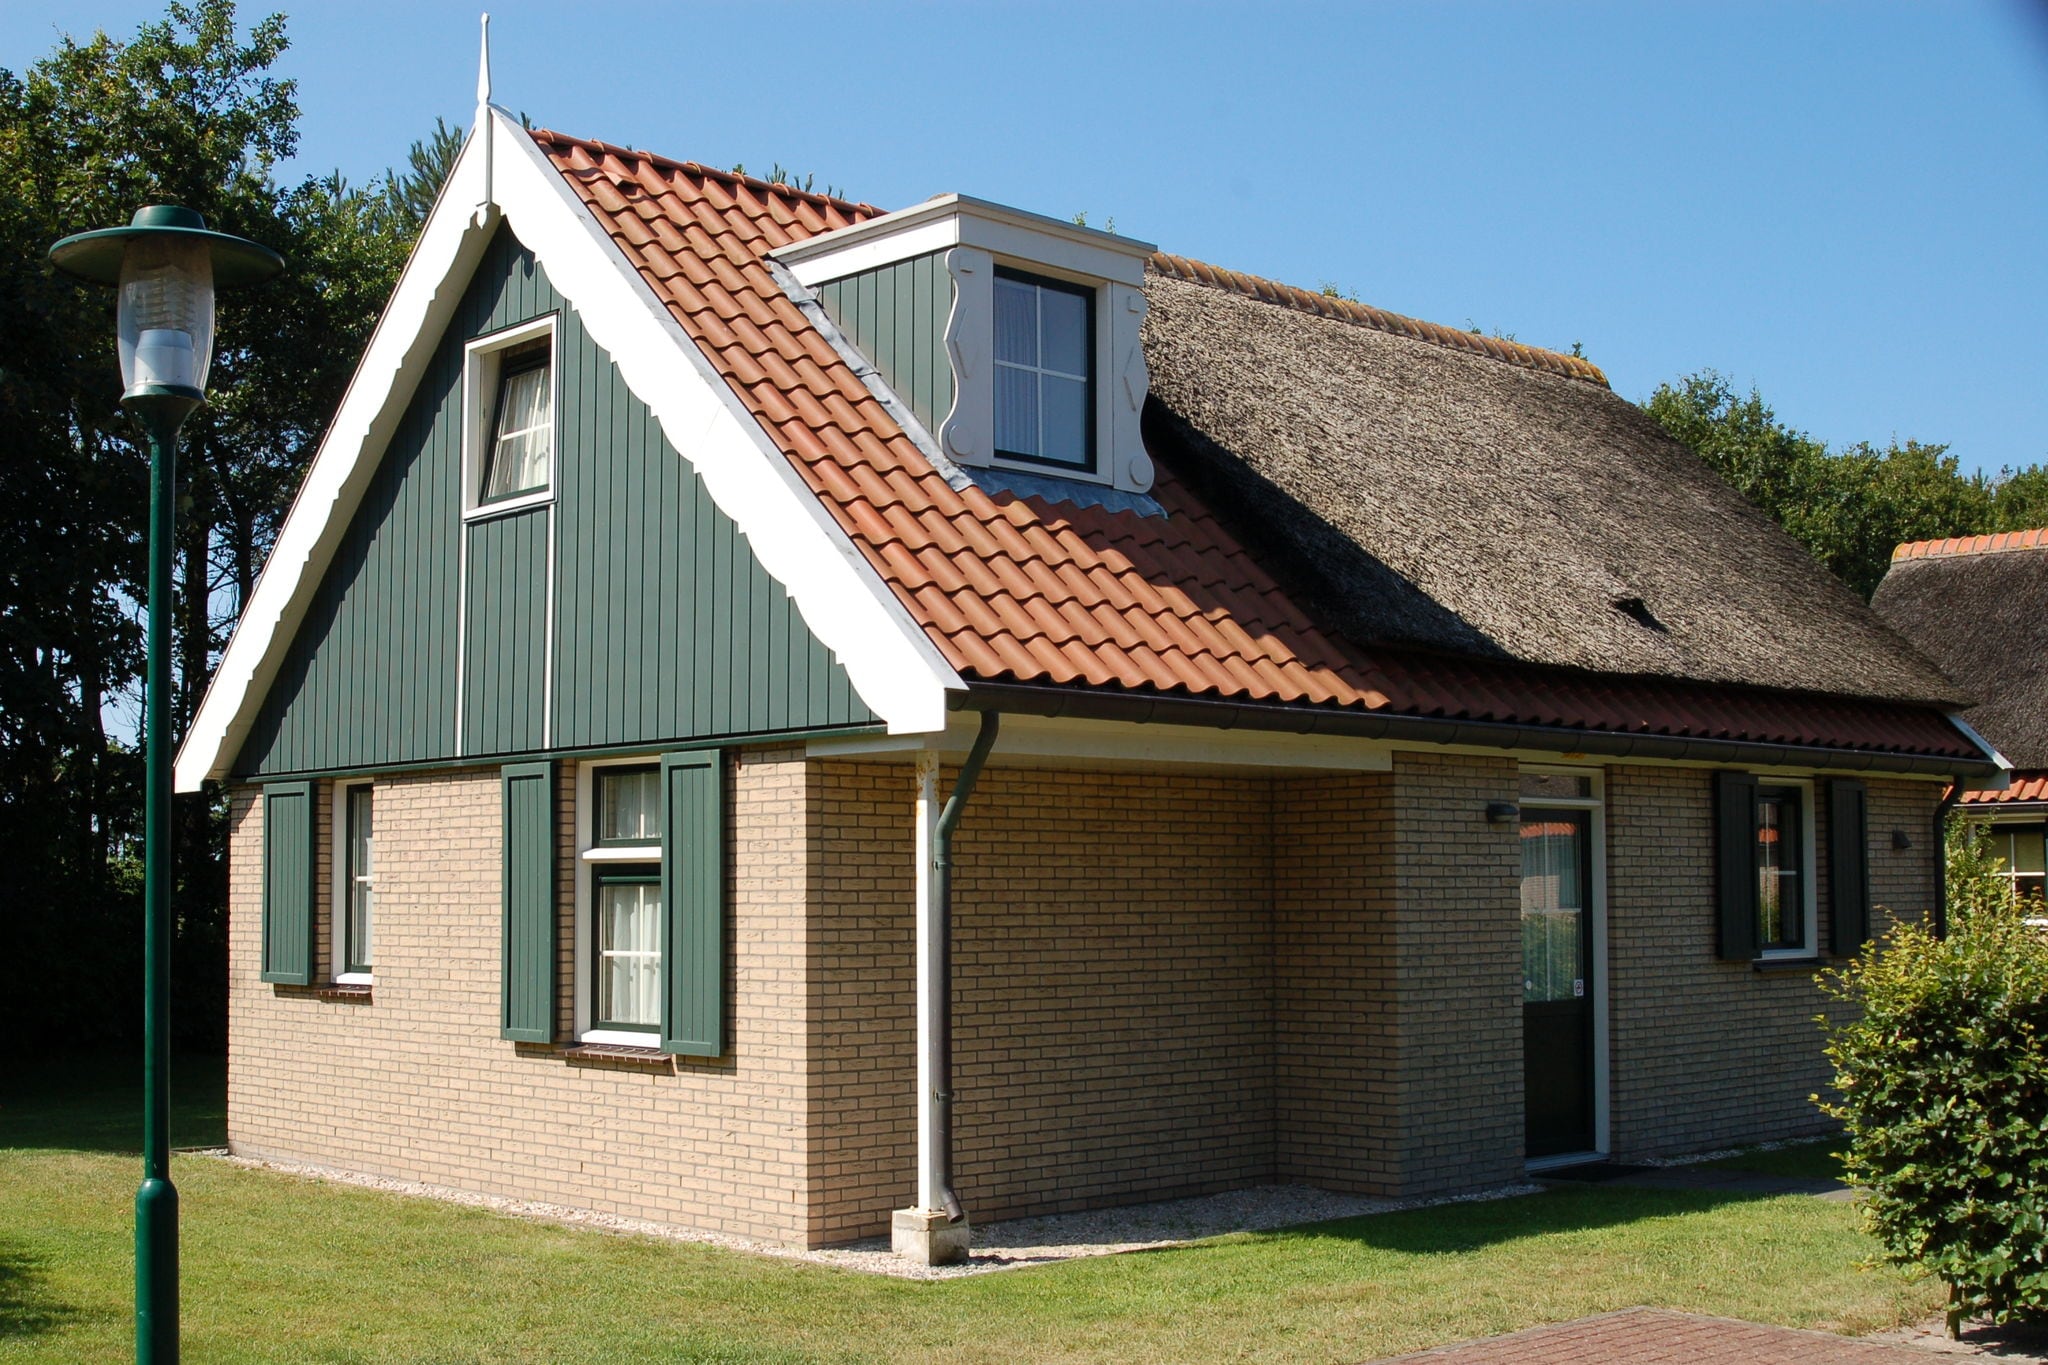 Vrijstaand landhuis met afwasmachine 2 km. van zee op Texel